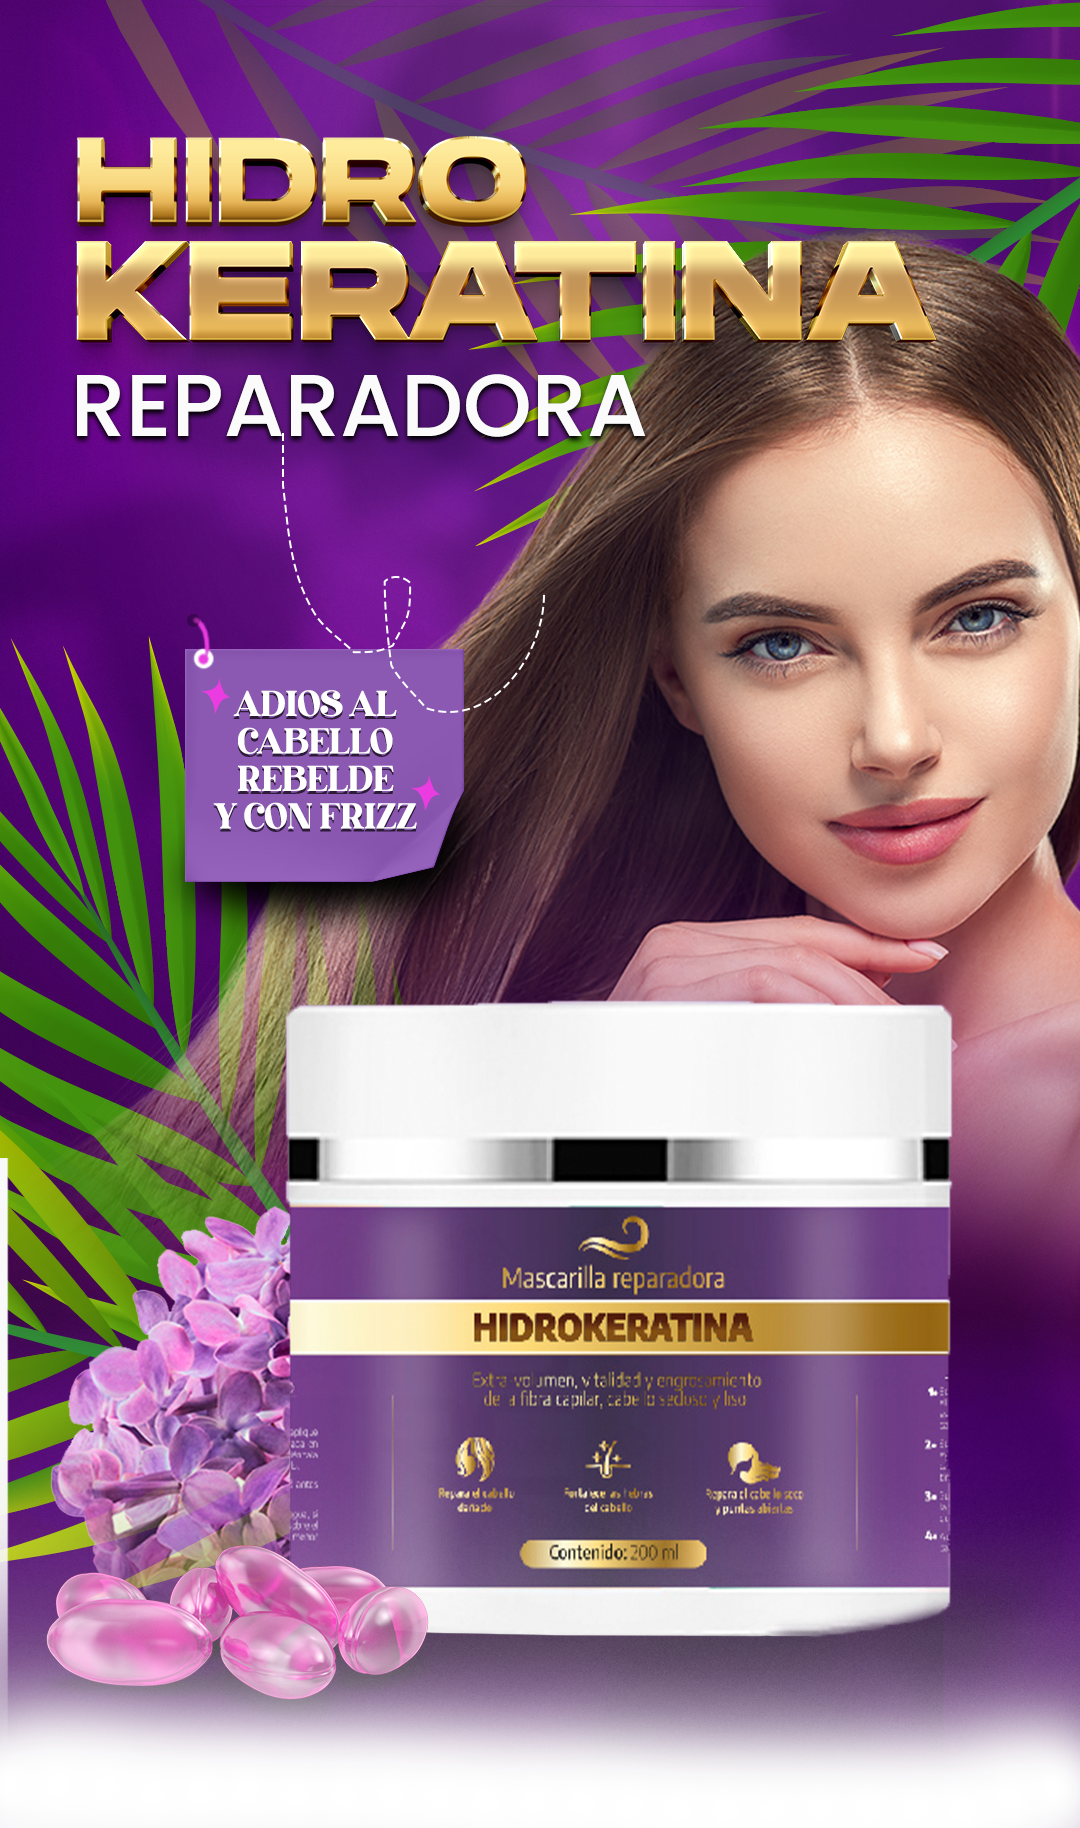 REPOLARIZADOR HIDROKERATINA – Store